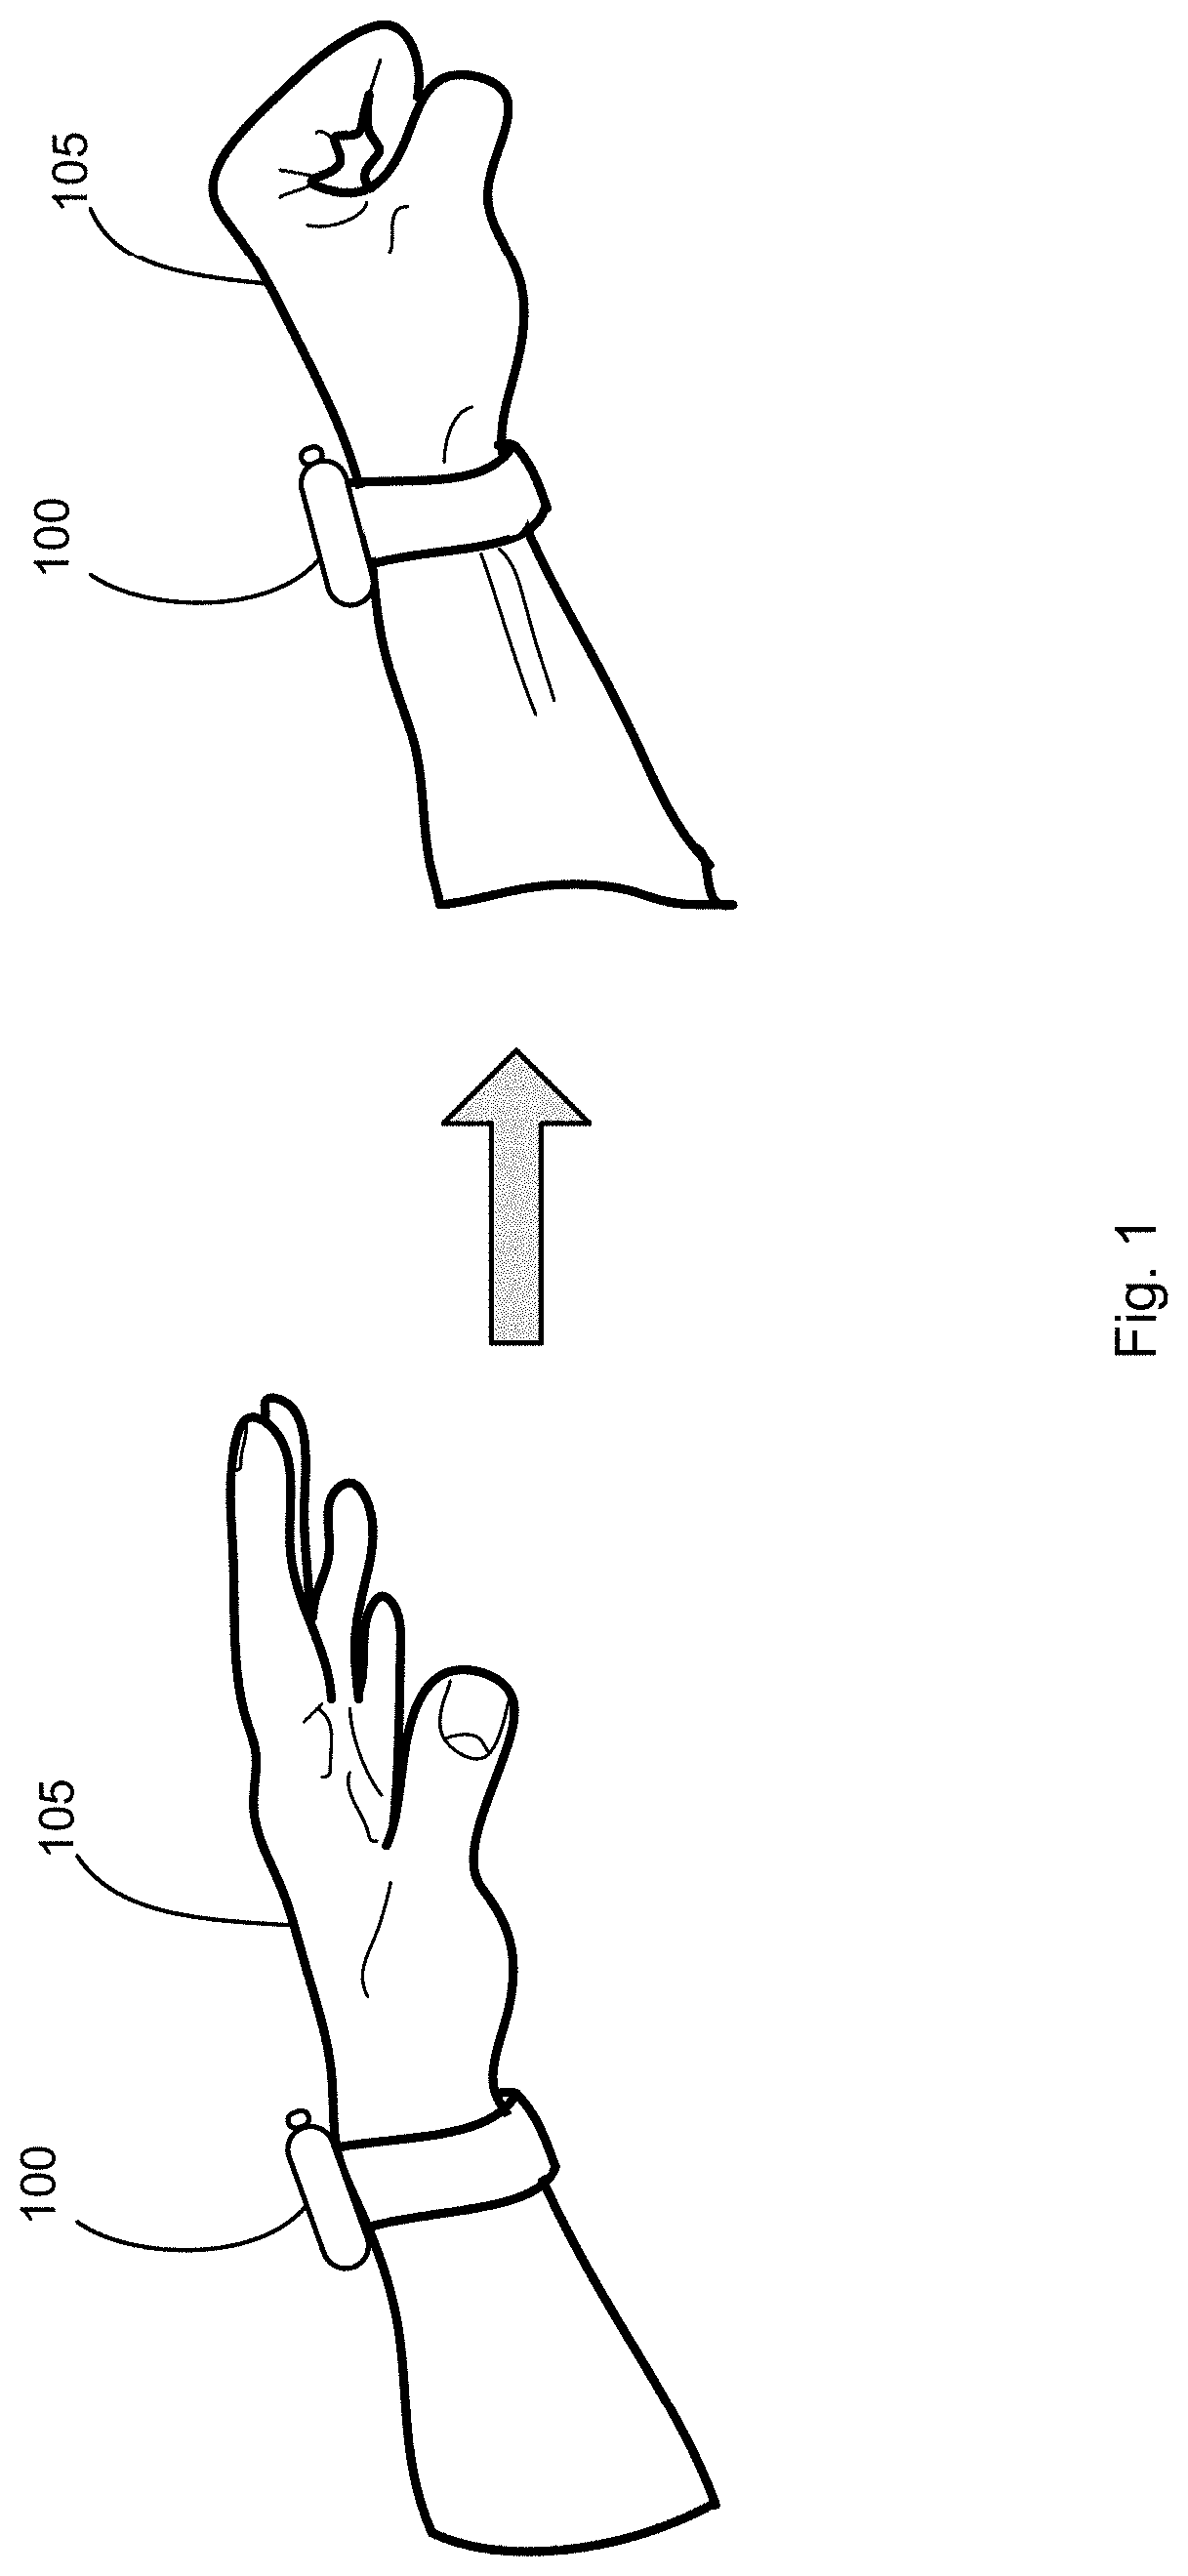 Sensing Hand Gestures Using Optical Sensors